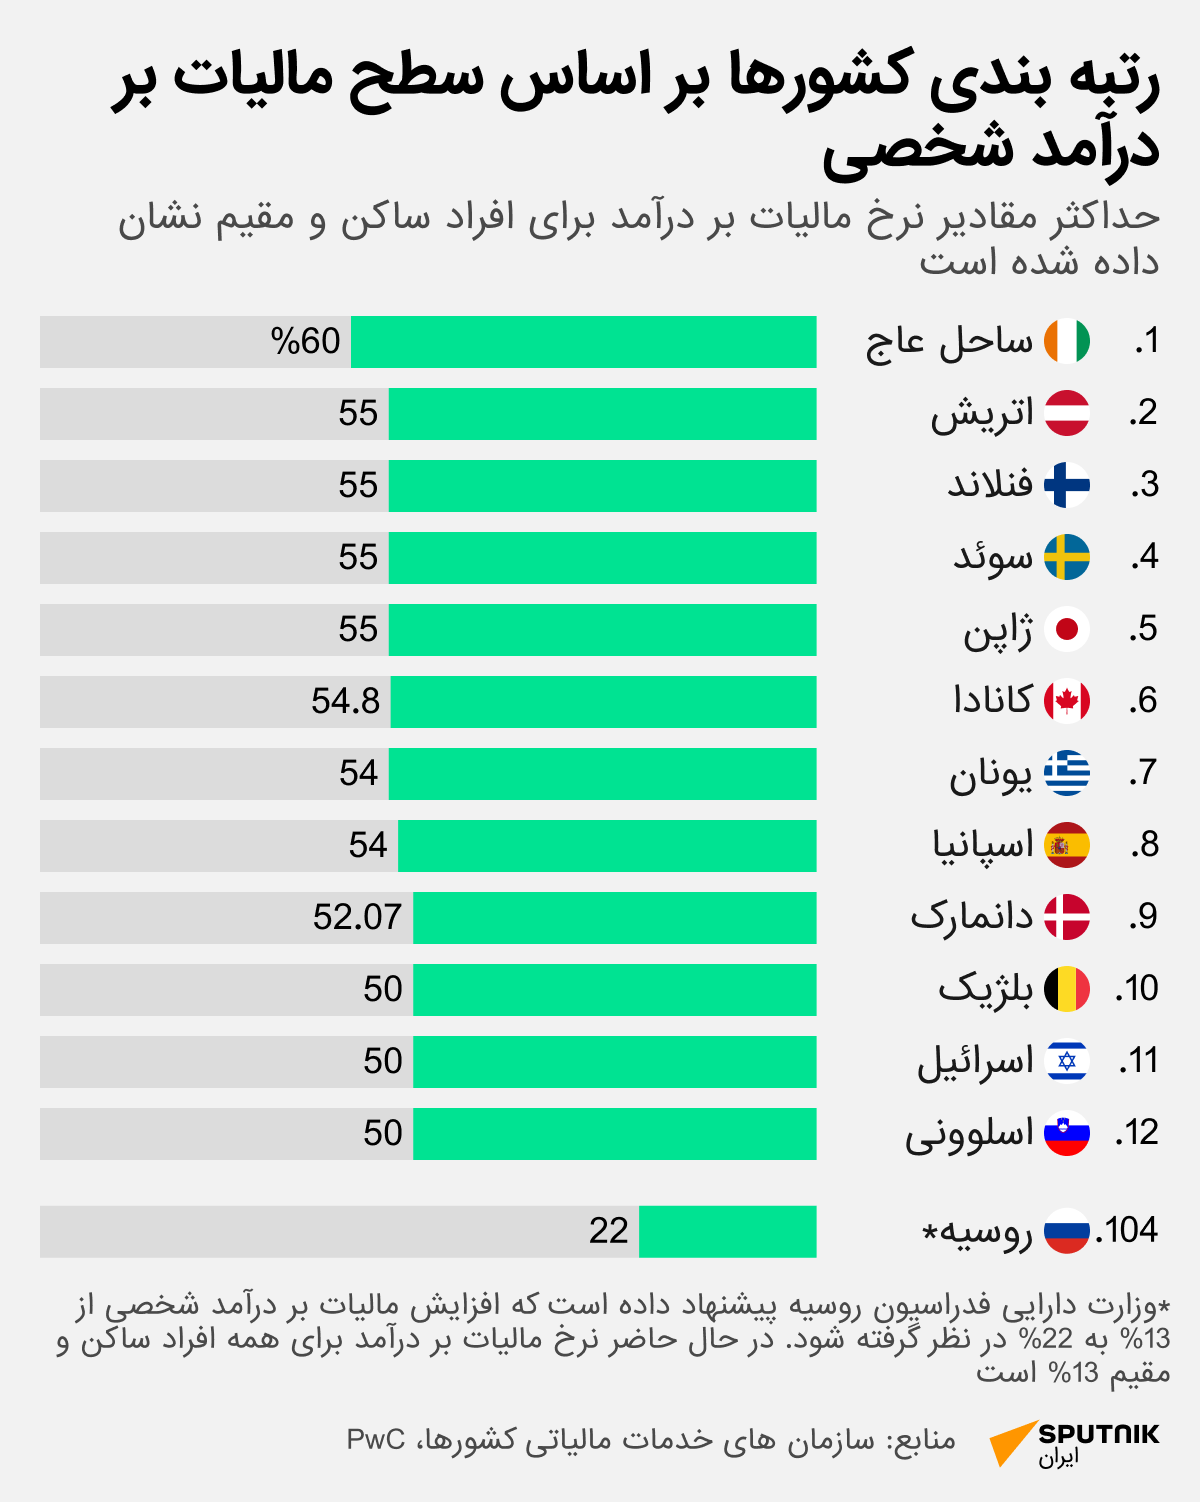 روسیه می تواند در رتبه صد و چهارمین کشور جهان از نظر پایین ترین سقف مالیاتی قرار گیرد - اسپوتنیک ایران  